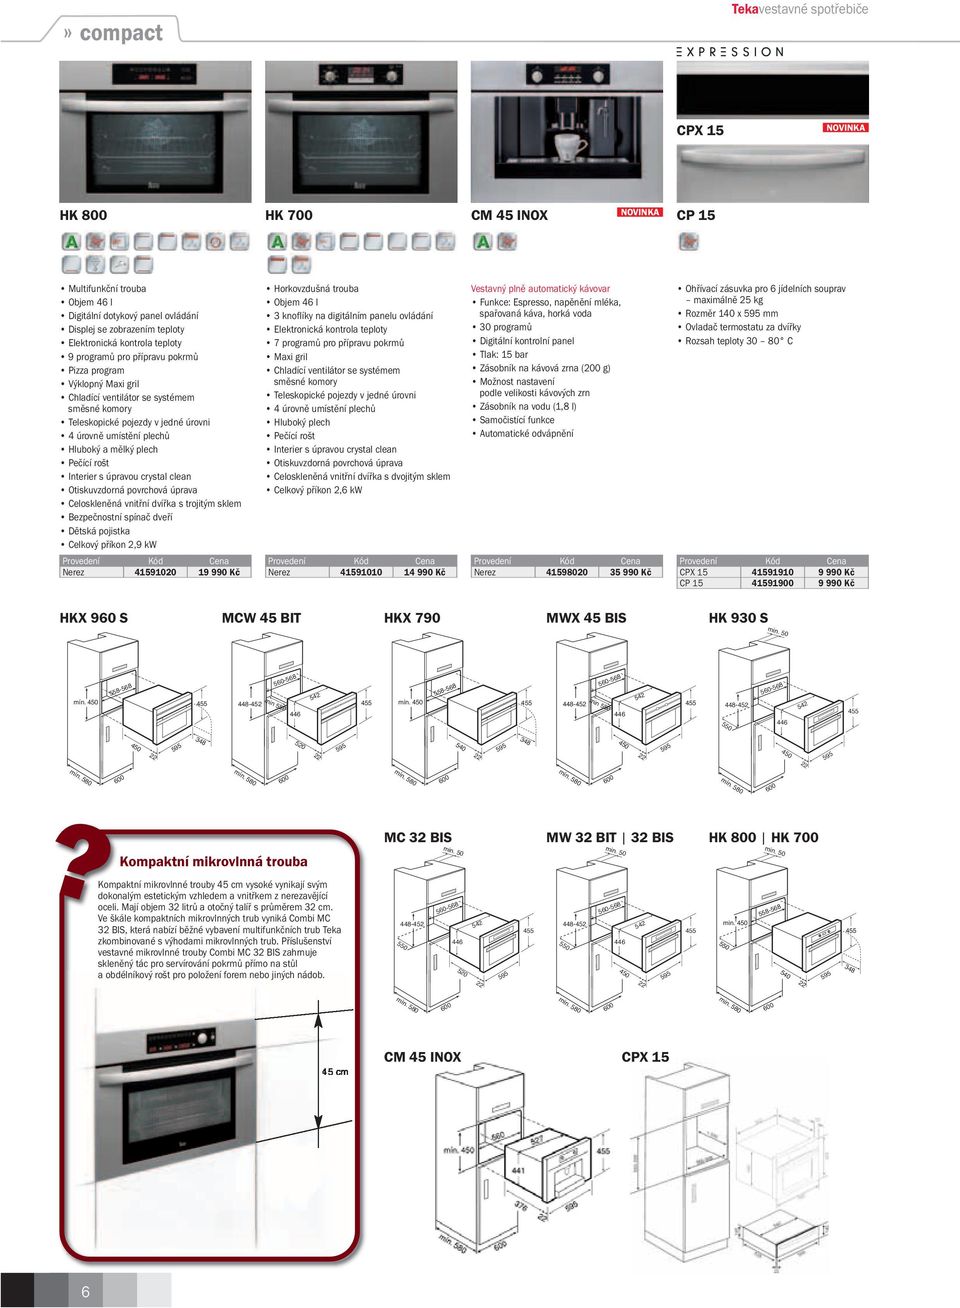 Bezpečnostní spínač dveří Celkový příkon 2,9 kw Horkovzdušná trouba Objem 46 l 3 knoflíky na digitálním panelu ovládání Elektronická kontrola teploty 7 programů pro přípravu pokrmů Maxi gril